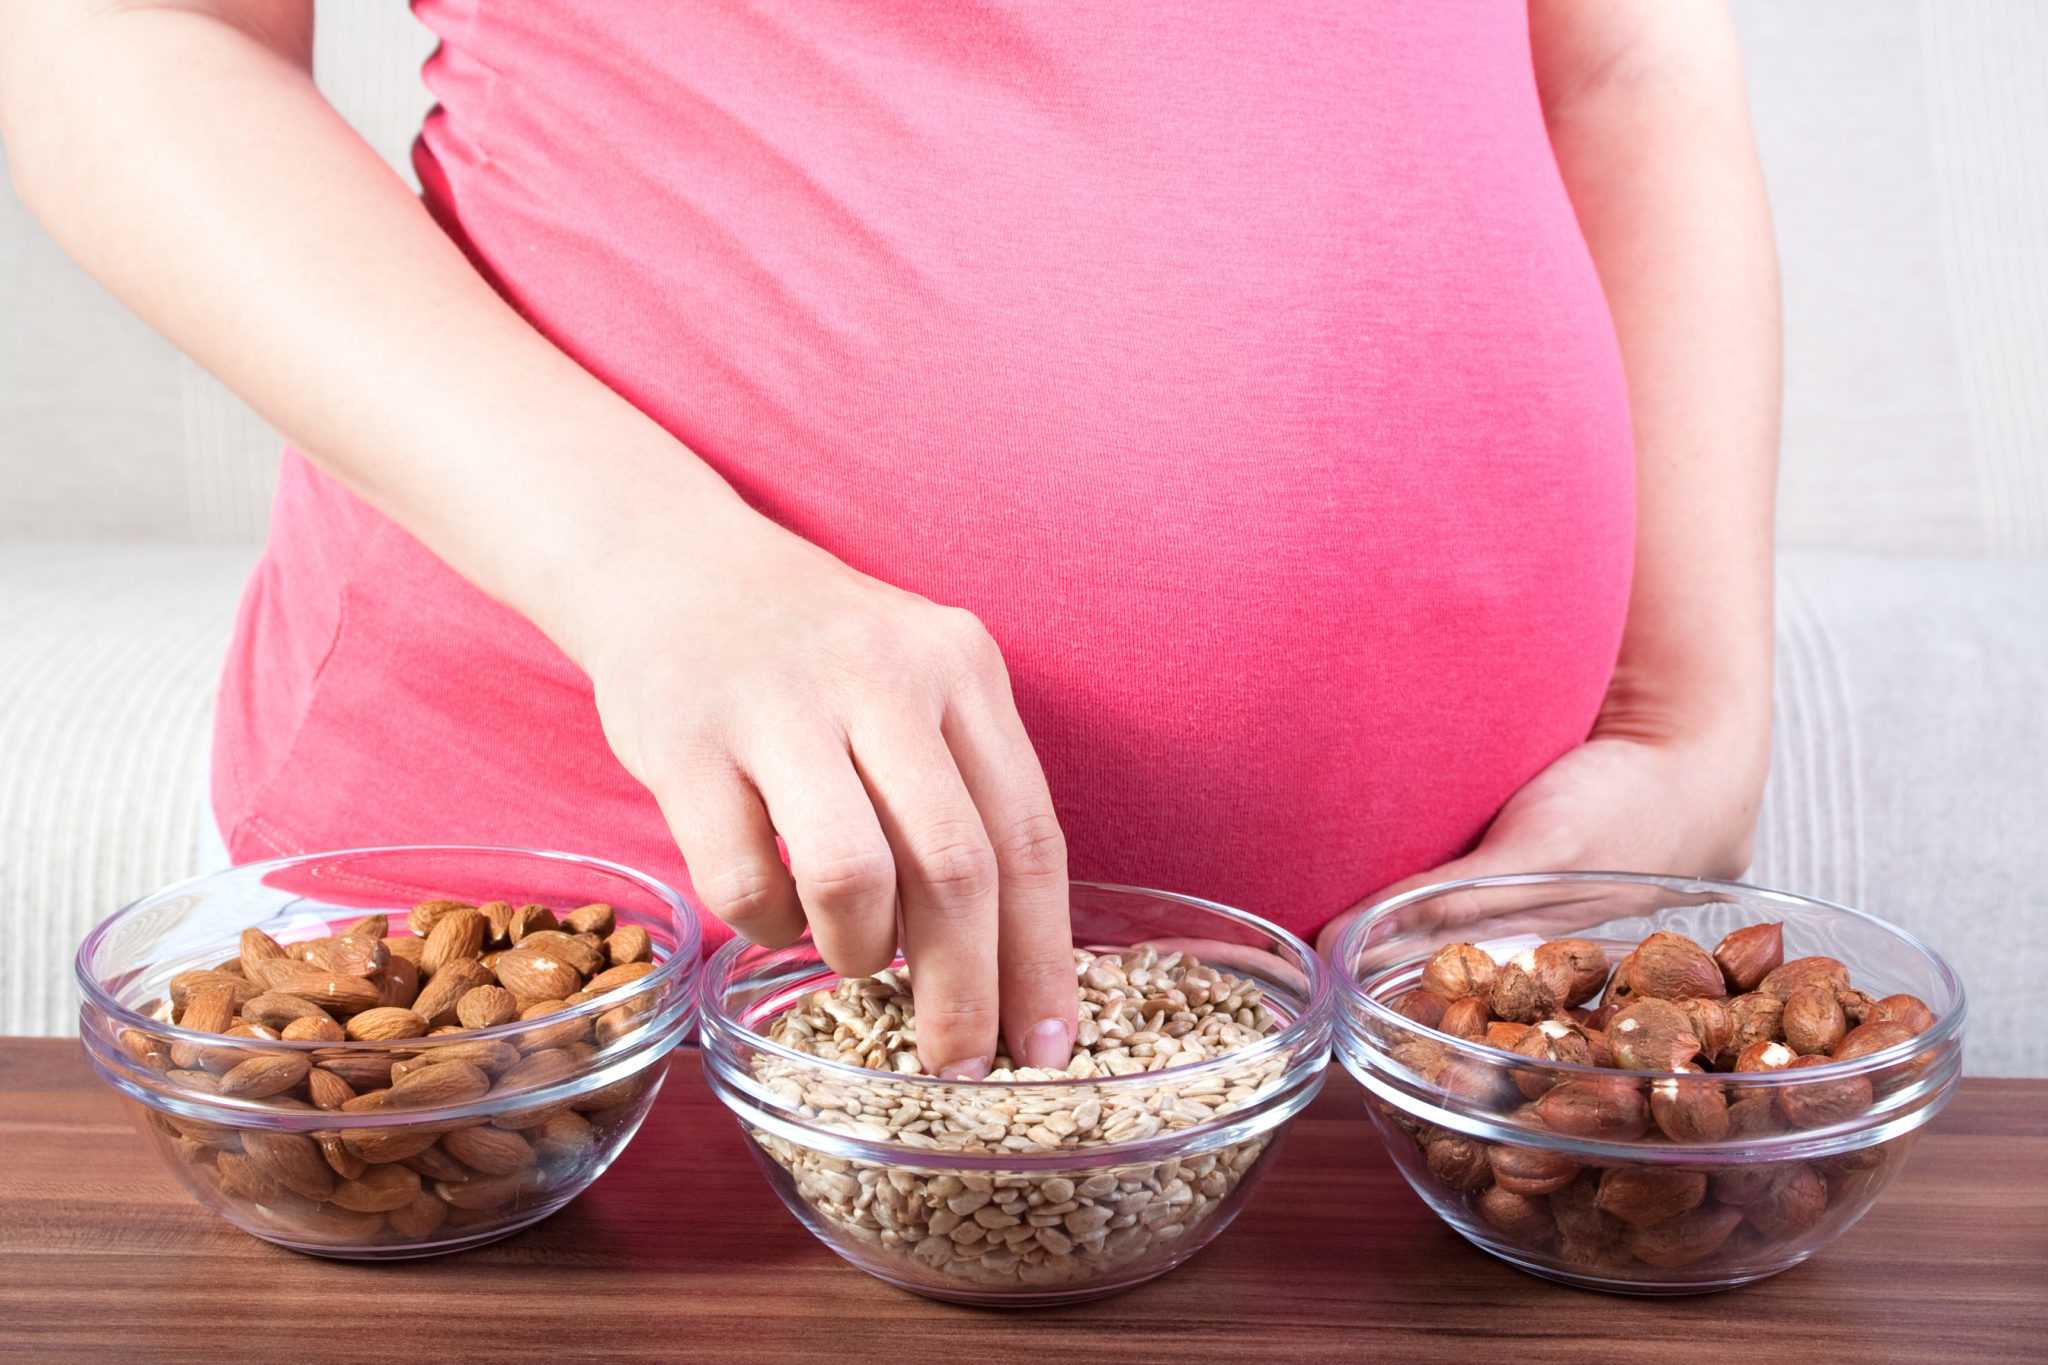 Грецкие орехи при беременности: польза и вред